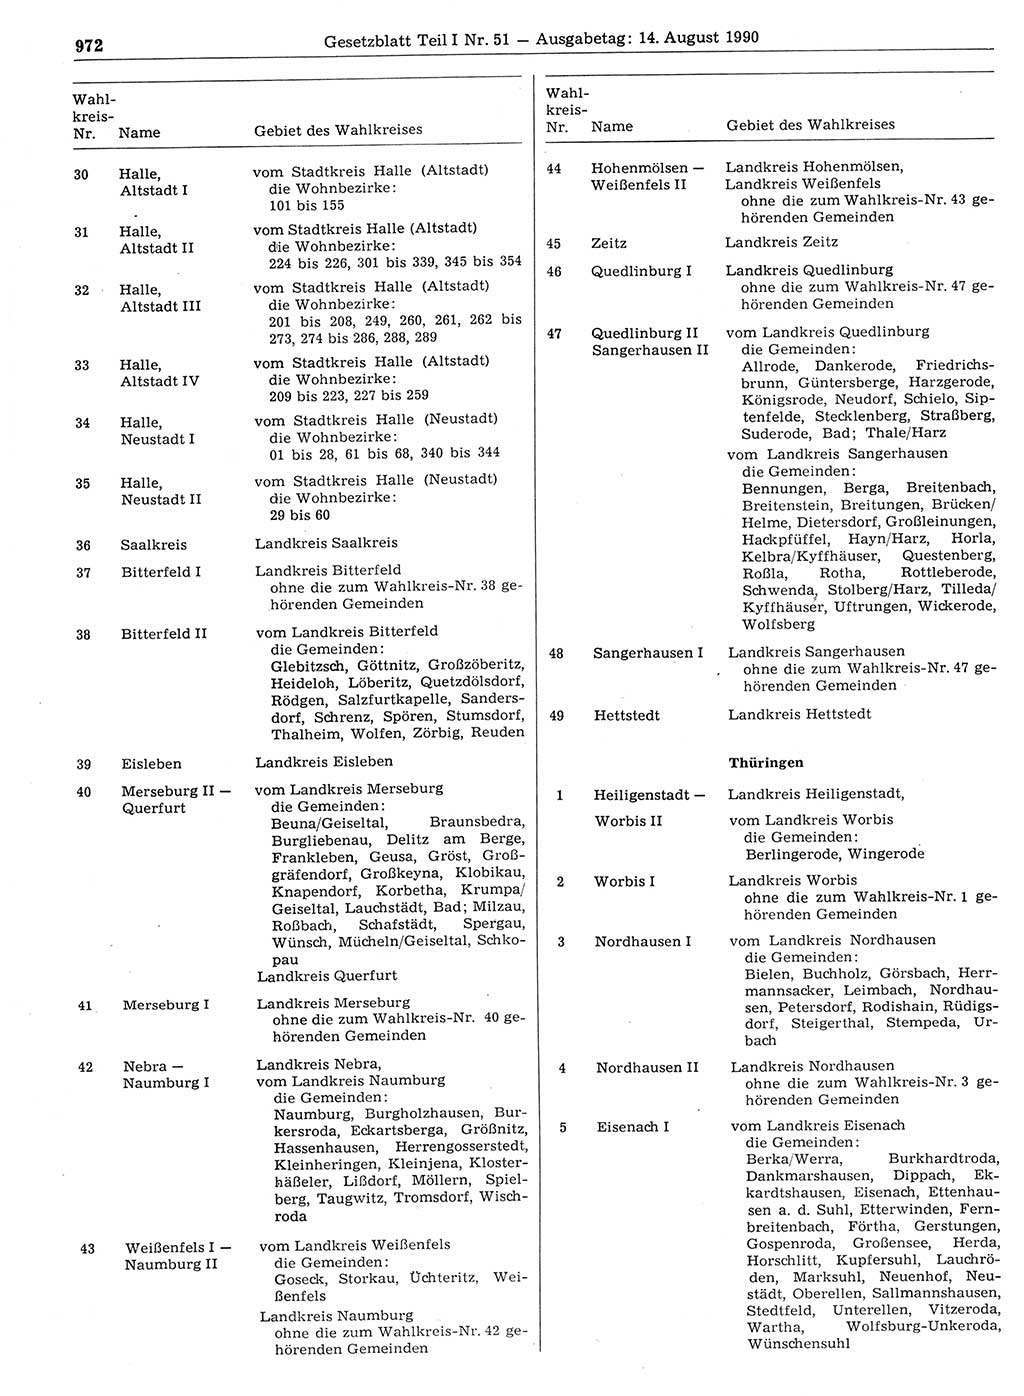 Gesetzblatt (GBl.) der Deutschen Demokratischen Republik (DDR) Teil Ⅰ 1990, Seite 972 (GBl. DDR Ⅰ 1990, S. 972)